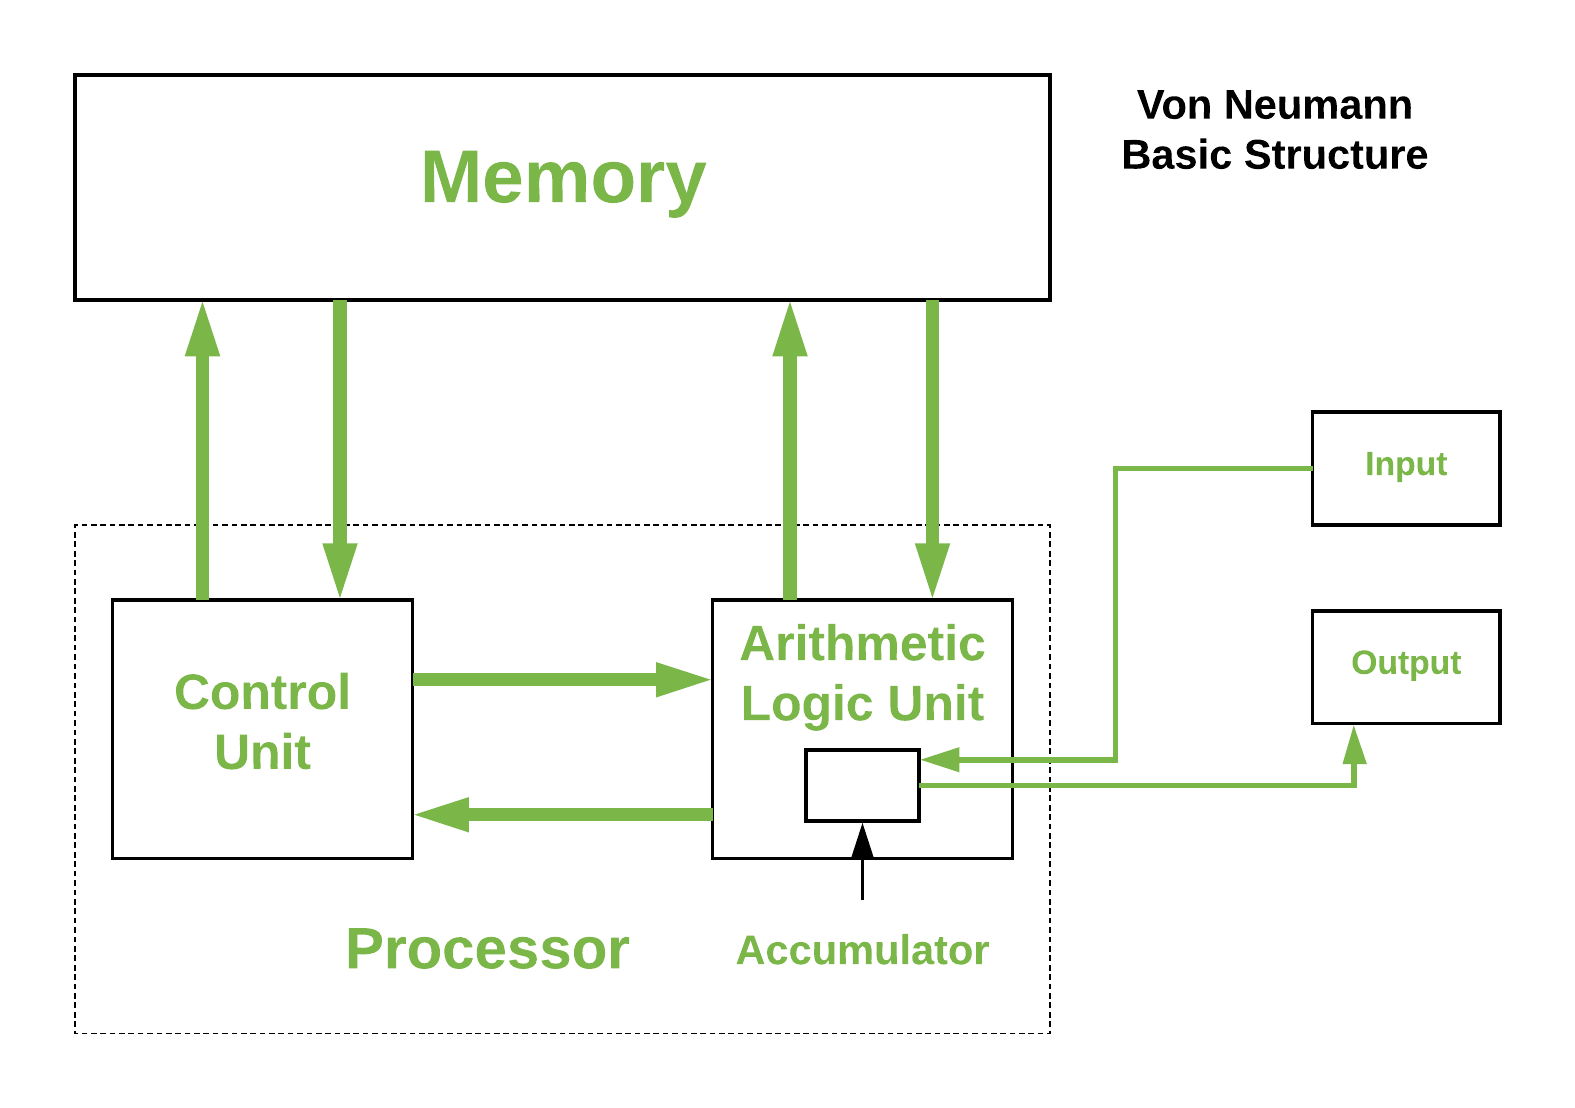 Architecture de Von-Neumann